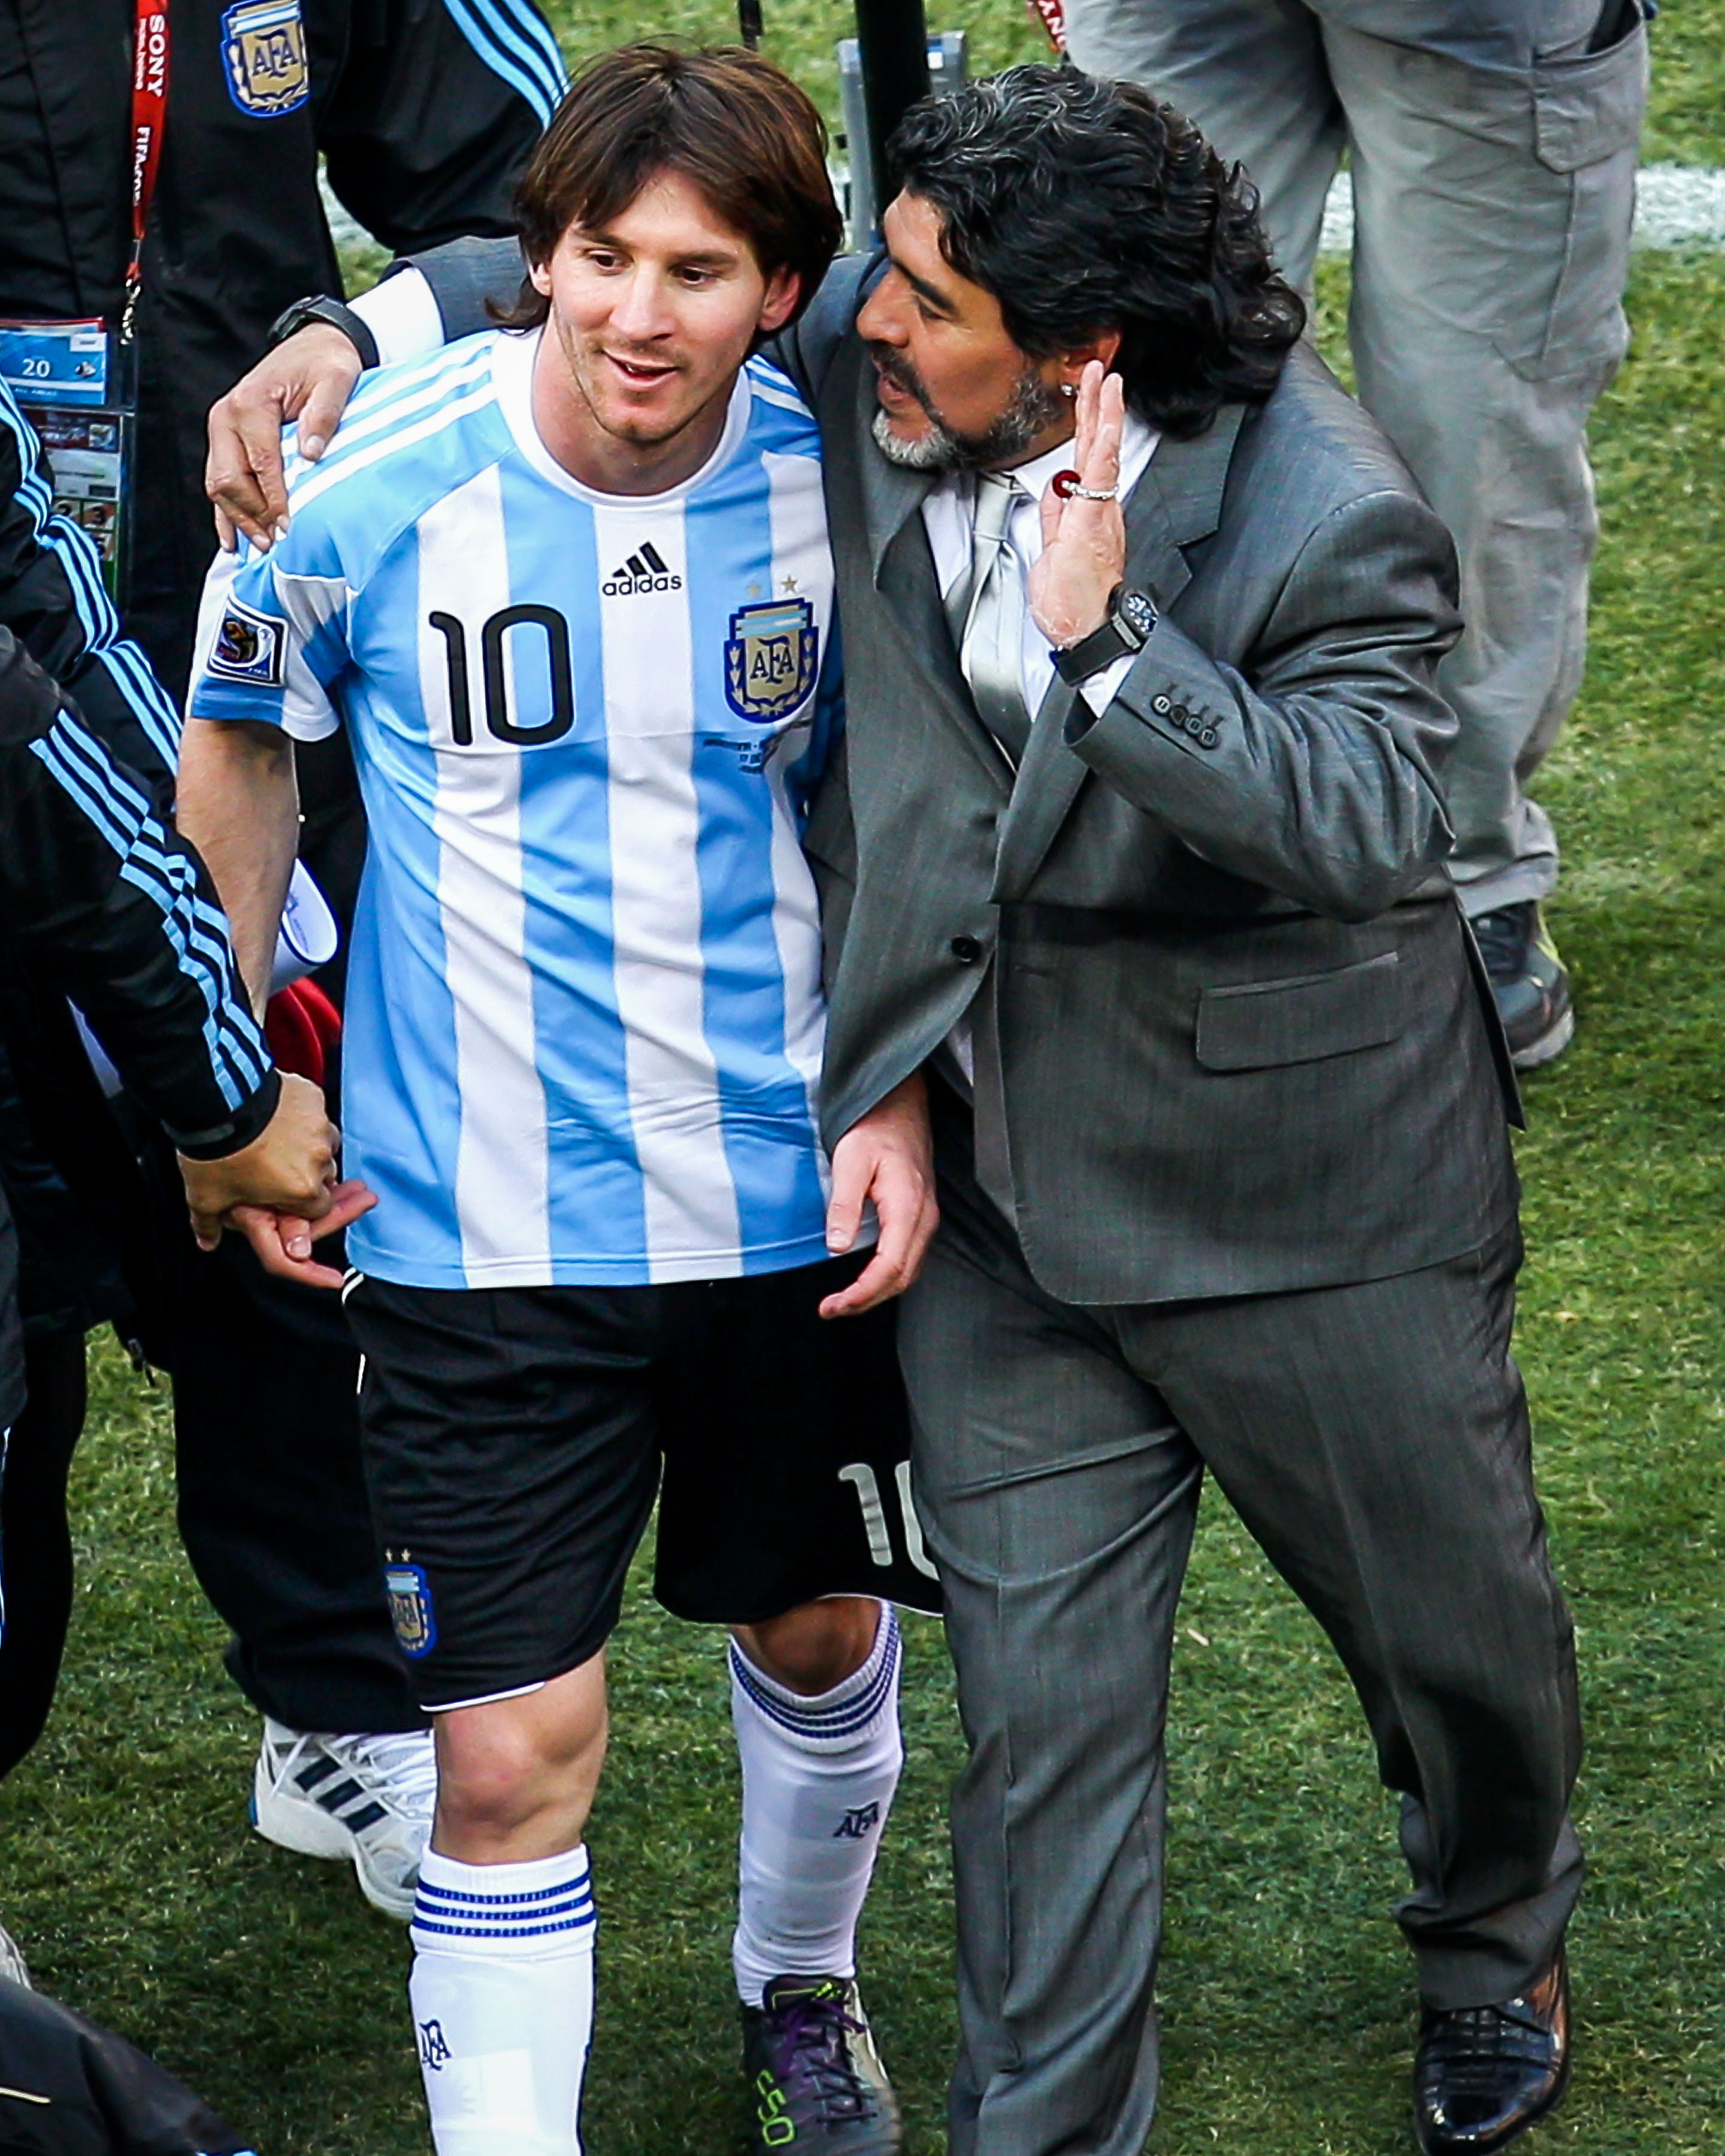 Maradona, Messi: Hãy cùng nhìn lại những khoảnh khắc đỉnh cao của Maradona và Messi trên sân cỏ. Hai huyền thoại bóng đá thế giới với những pha bóng ma thuật và những bàn thắng đầy bản năng. Xem họ làm thế nào khiến người hâm mộ mãn nhãn trên đường tới chiến thắng.